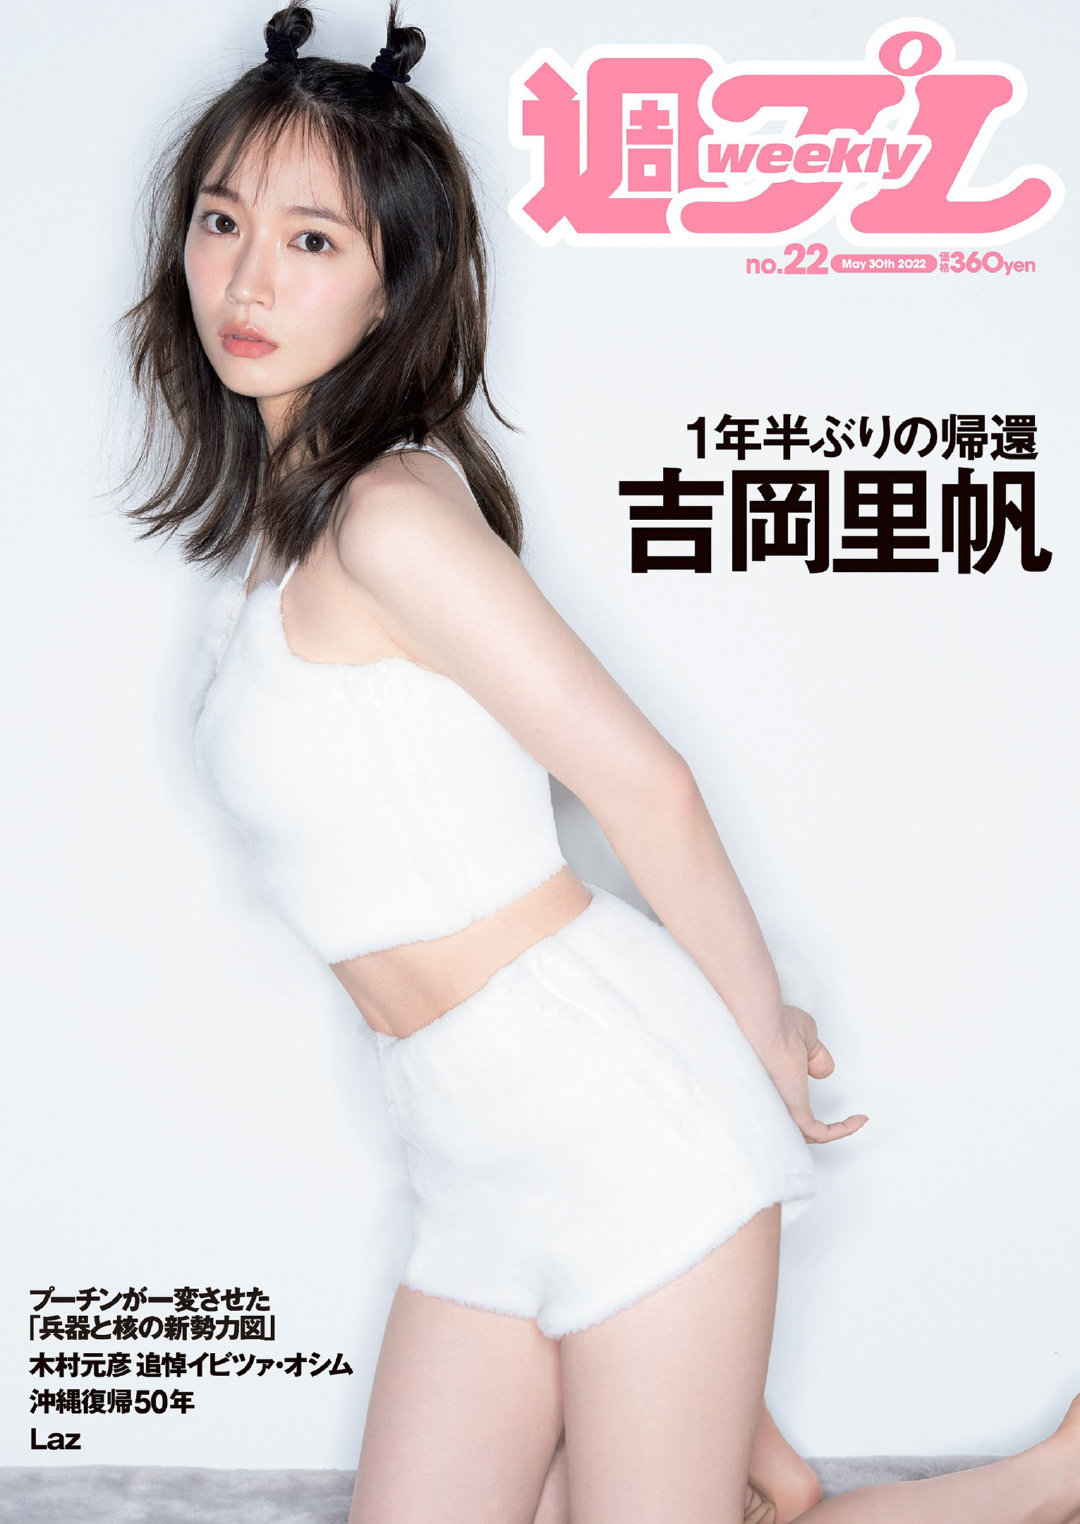 [Weekly Playboy] 2022 No.22 吉岡里帆 - itotii